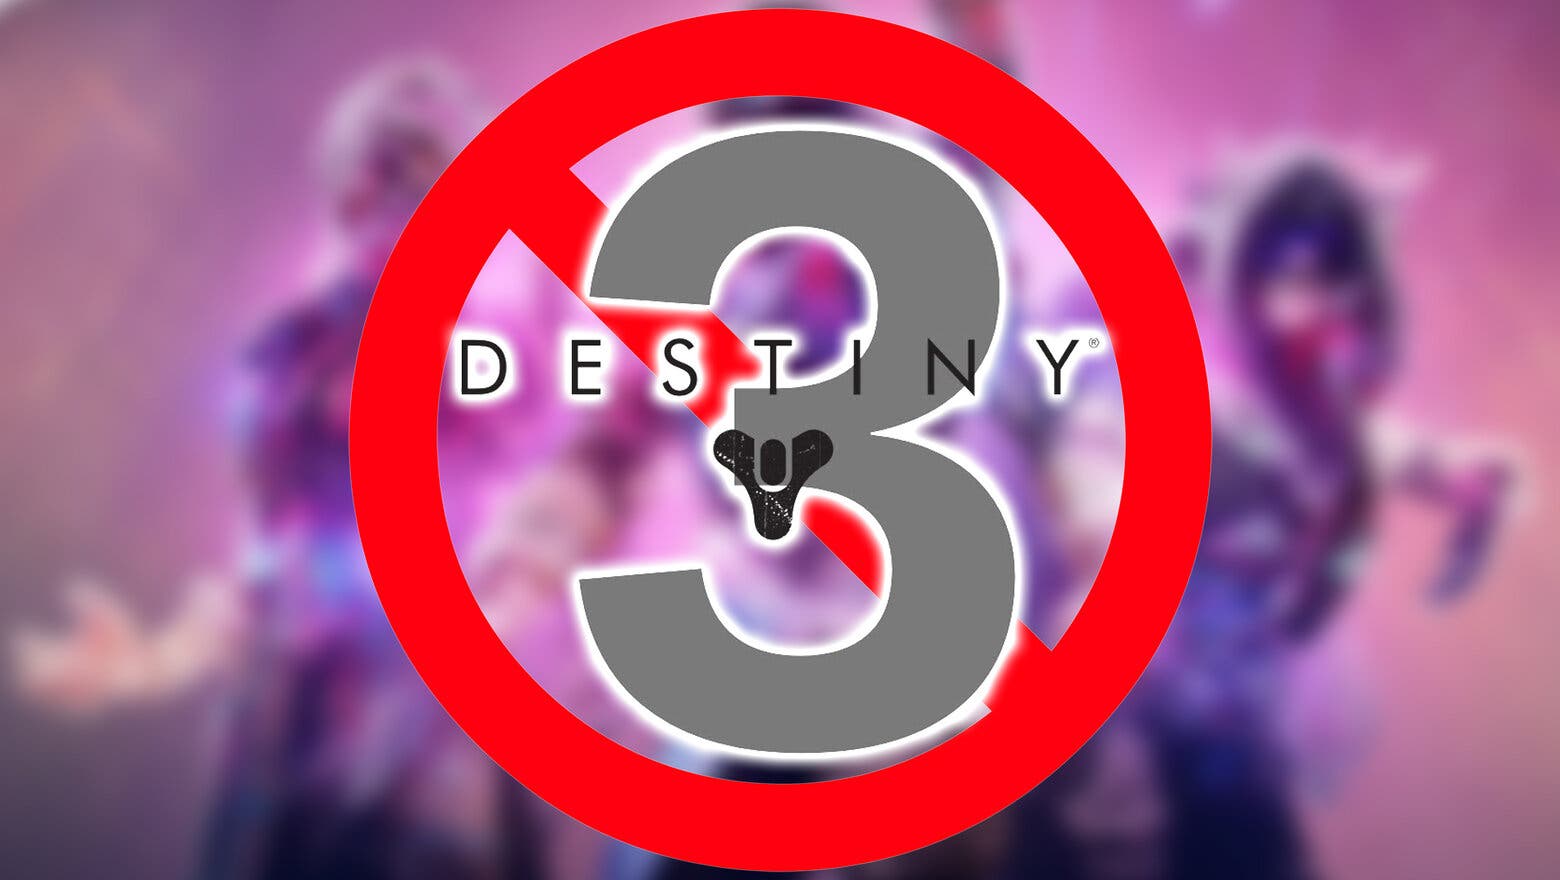 Logotipo de Destiny 3 con un signo de prohibido